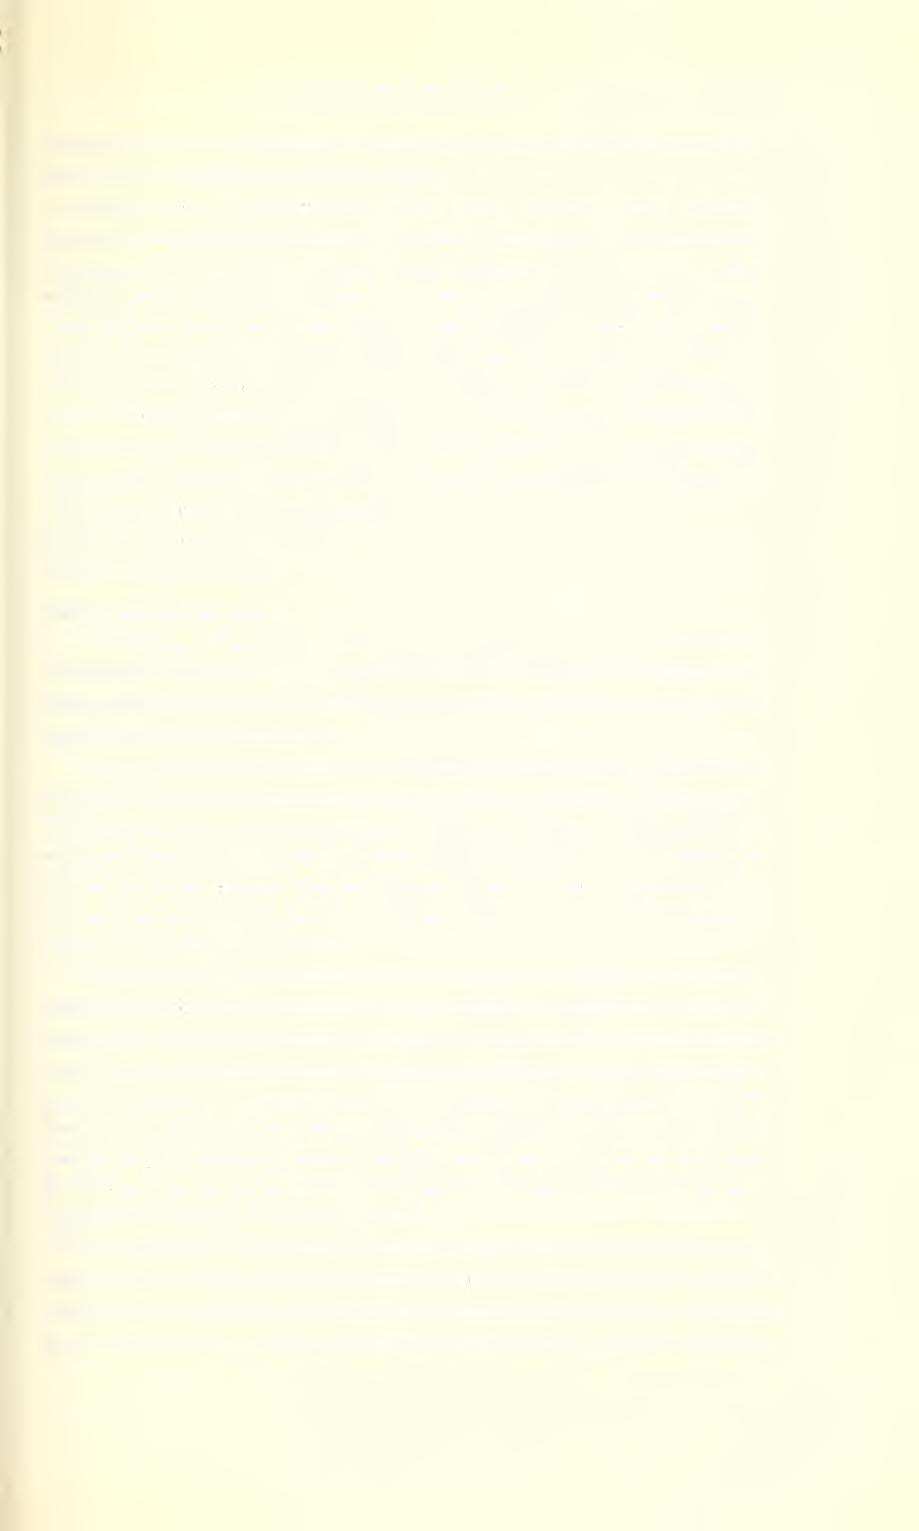 Ent. Arb. Mus. Frey 14, 1963 165 feinen, zerstreut angeordneten Punkten, einige kurze Börstchen im vorderen Drittel. Schildchen sehr groß und glatt.